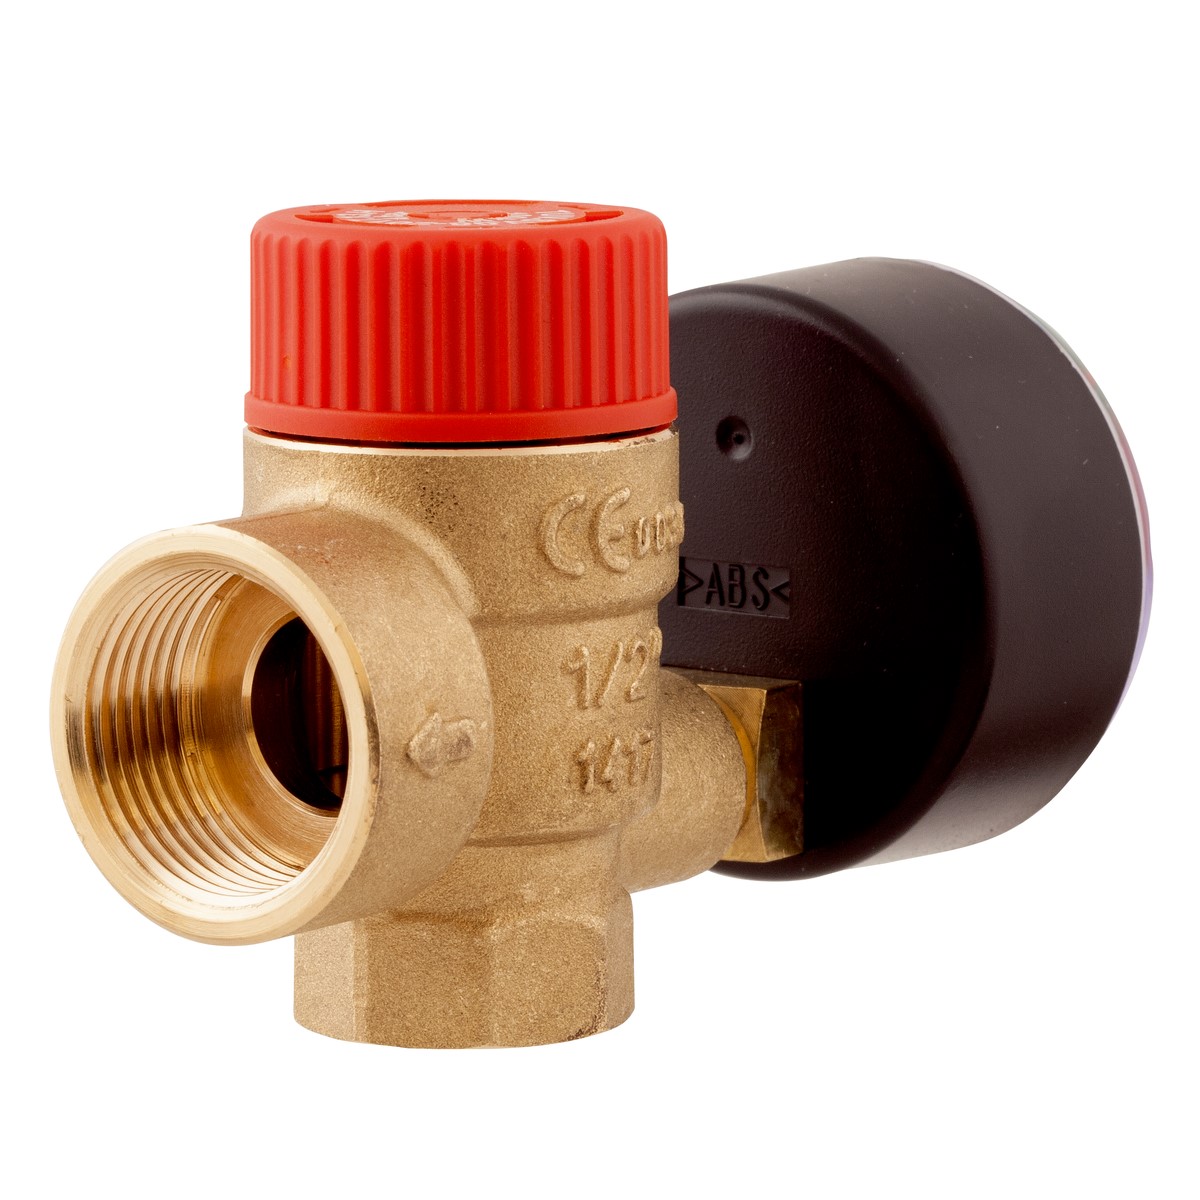 Pojistný ventil pro ústřední topení MS s výstupem pro manometr GW G¼", 1,5 baru, Rp½" x Rp¾" - AFRISO.CZ